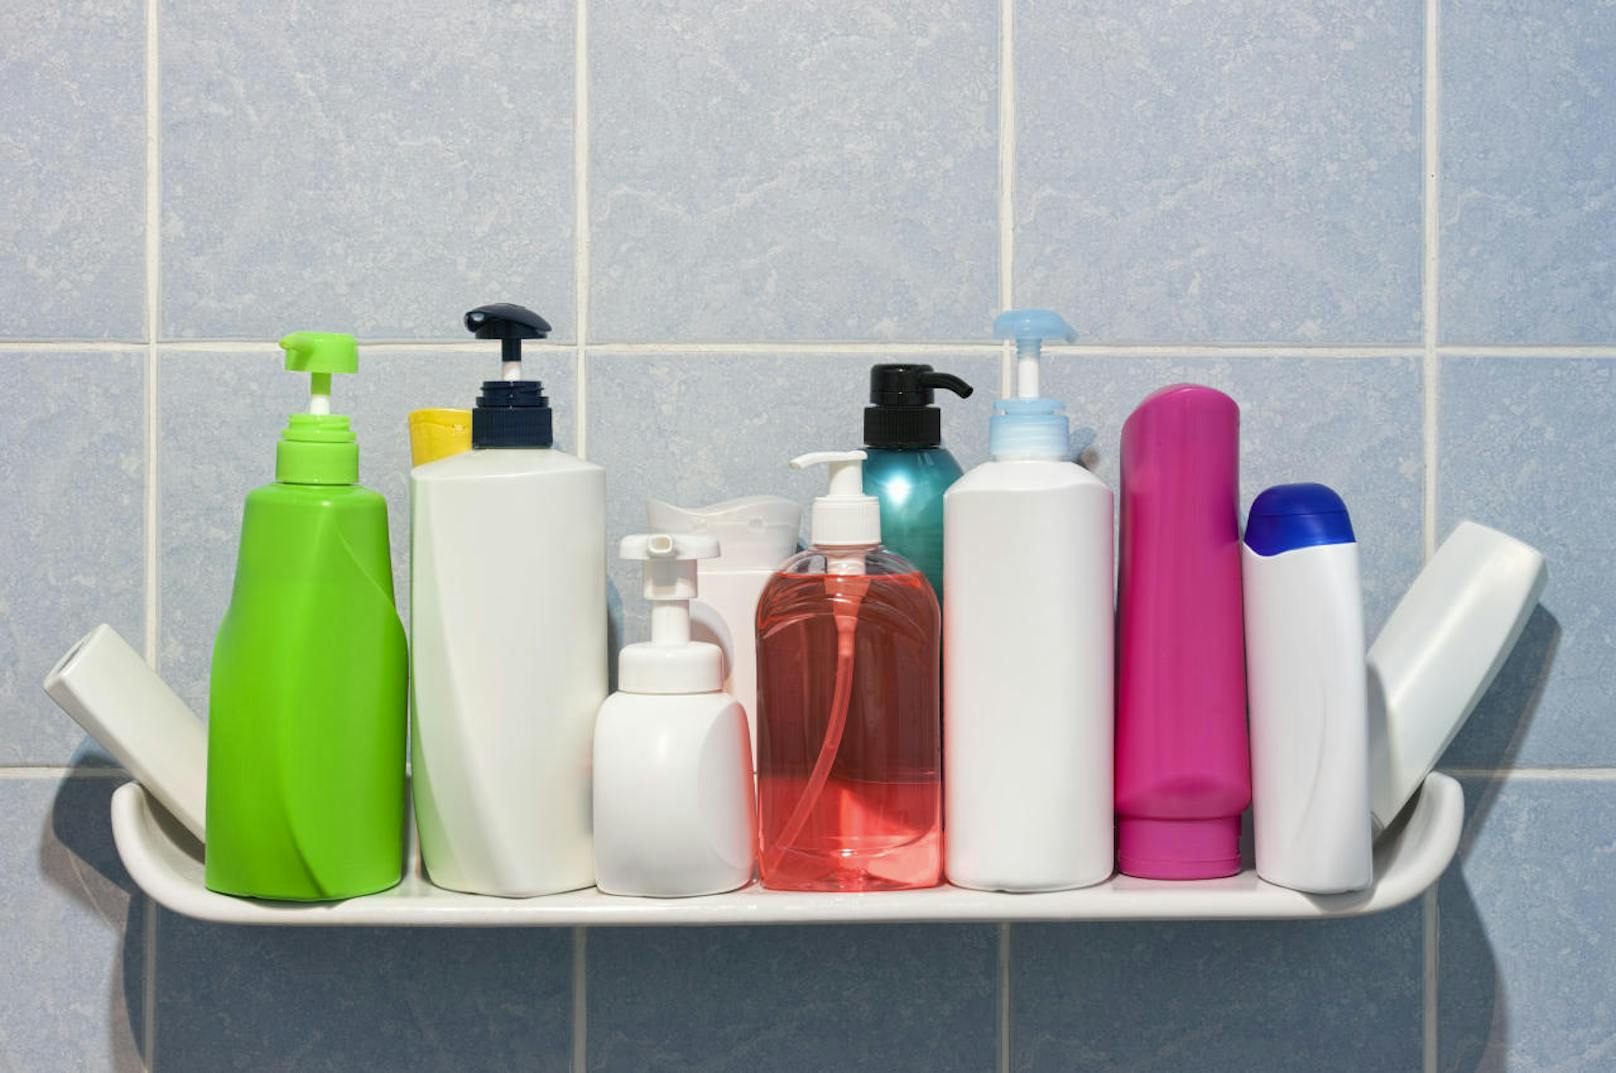 Es ist ein Naturgesetz: Der Conditioner ist immer etwa doppelt so schnell leer wie das Shampoo. Die Folge: Dutzende angefangene Shampooflaschen. Hier lautet die Devise: aufbrauchen. Außerdem könnten Sie anfangen, Conditioner in größeren Flaschen zu kaufen - oder jeweils zwei Stück für jede Flasche Shampoo.